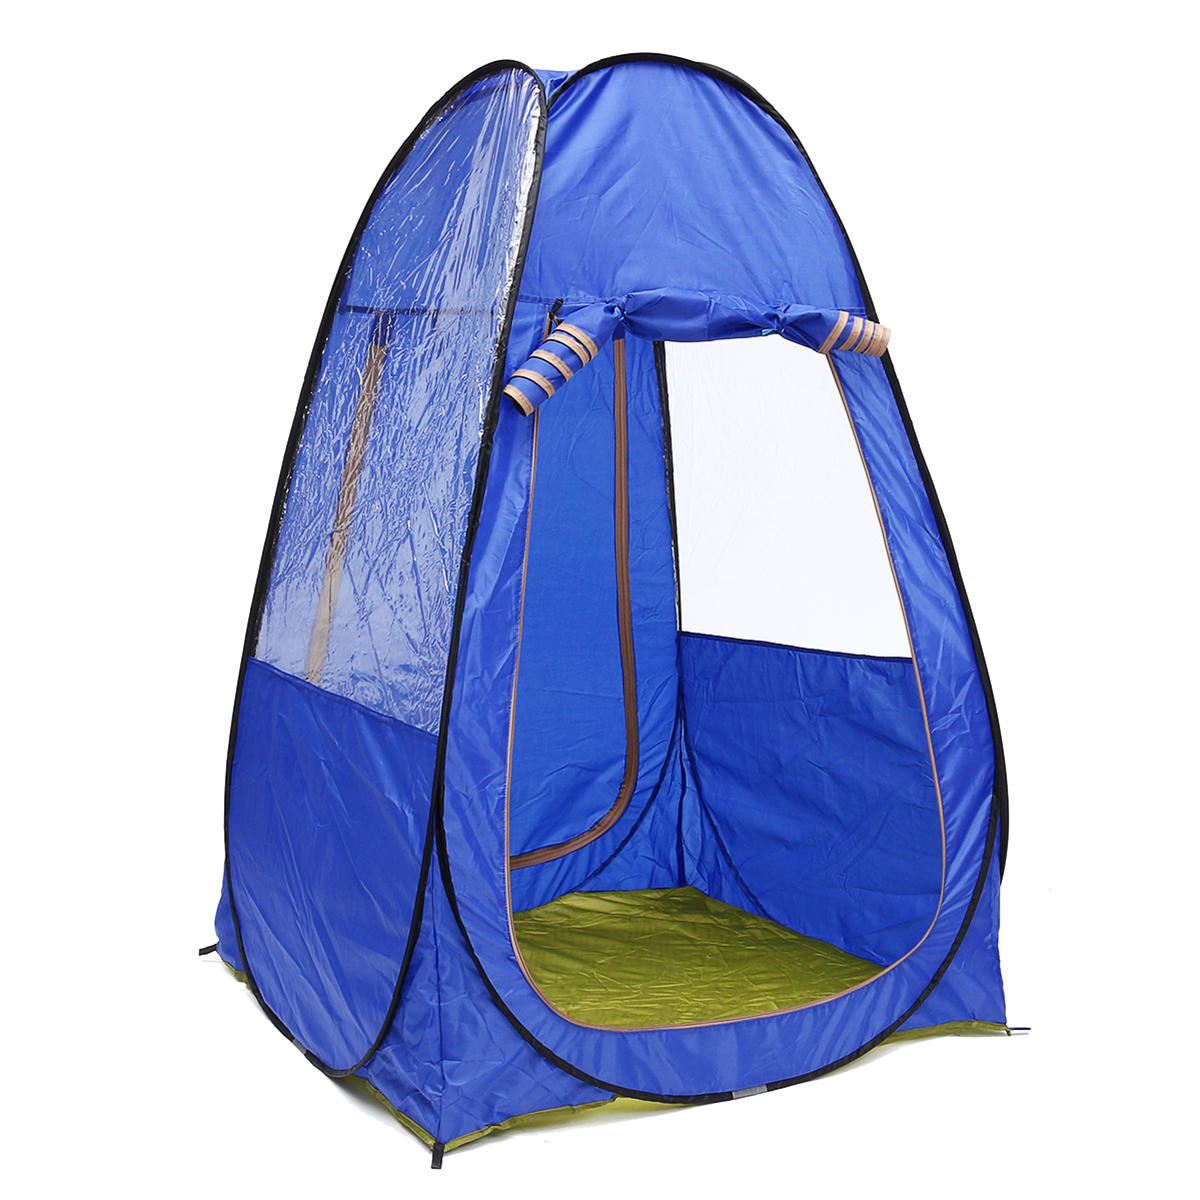 Przenośny namiot na kemping dla 1-2 osób, składany, odporny na promieniowanie UV, wodoodporny, z daszkiem przeciwsłonecznym